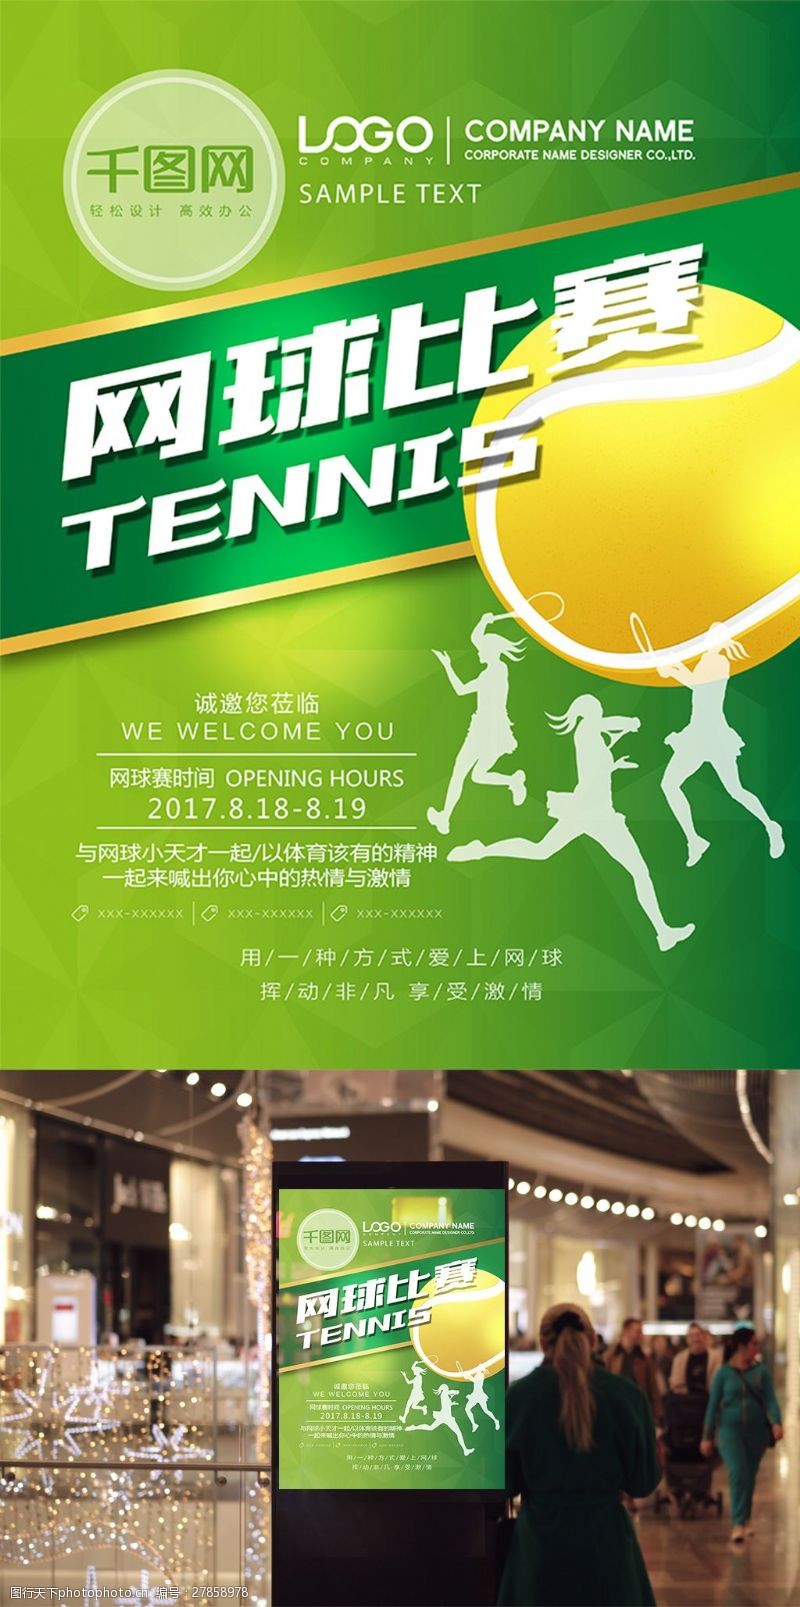 清新简约绿色网球比赛宣传海报设计